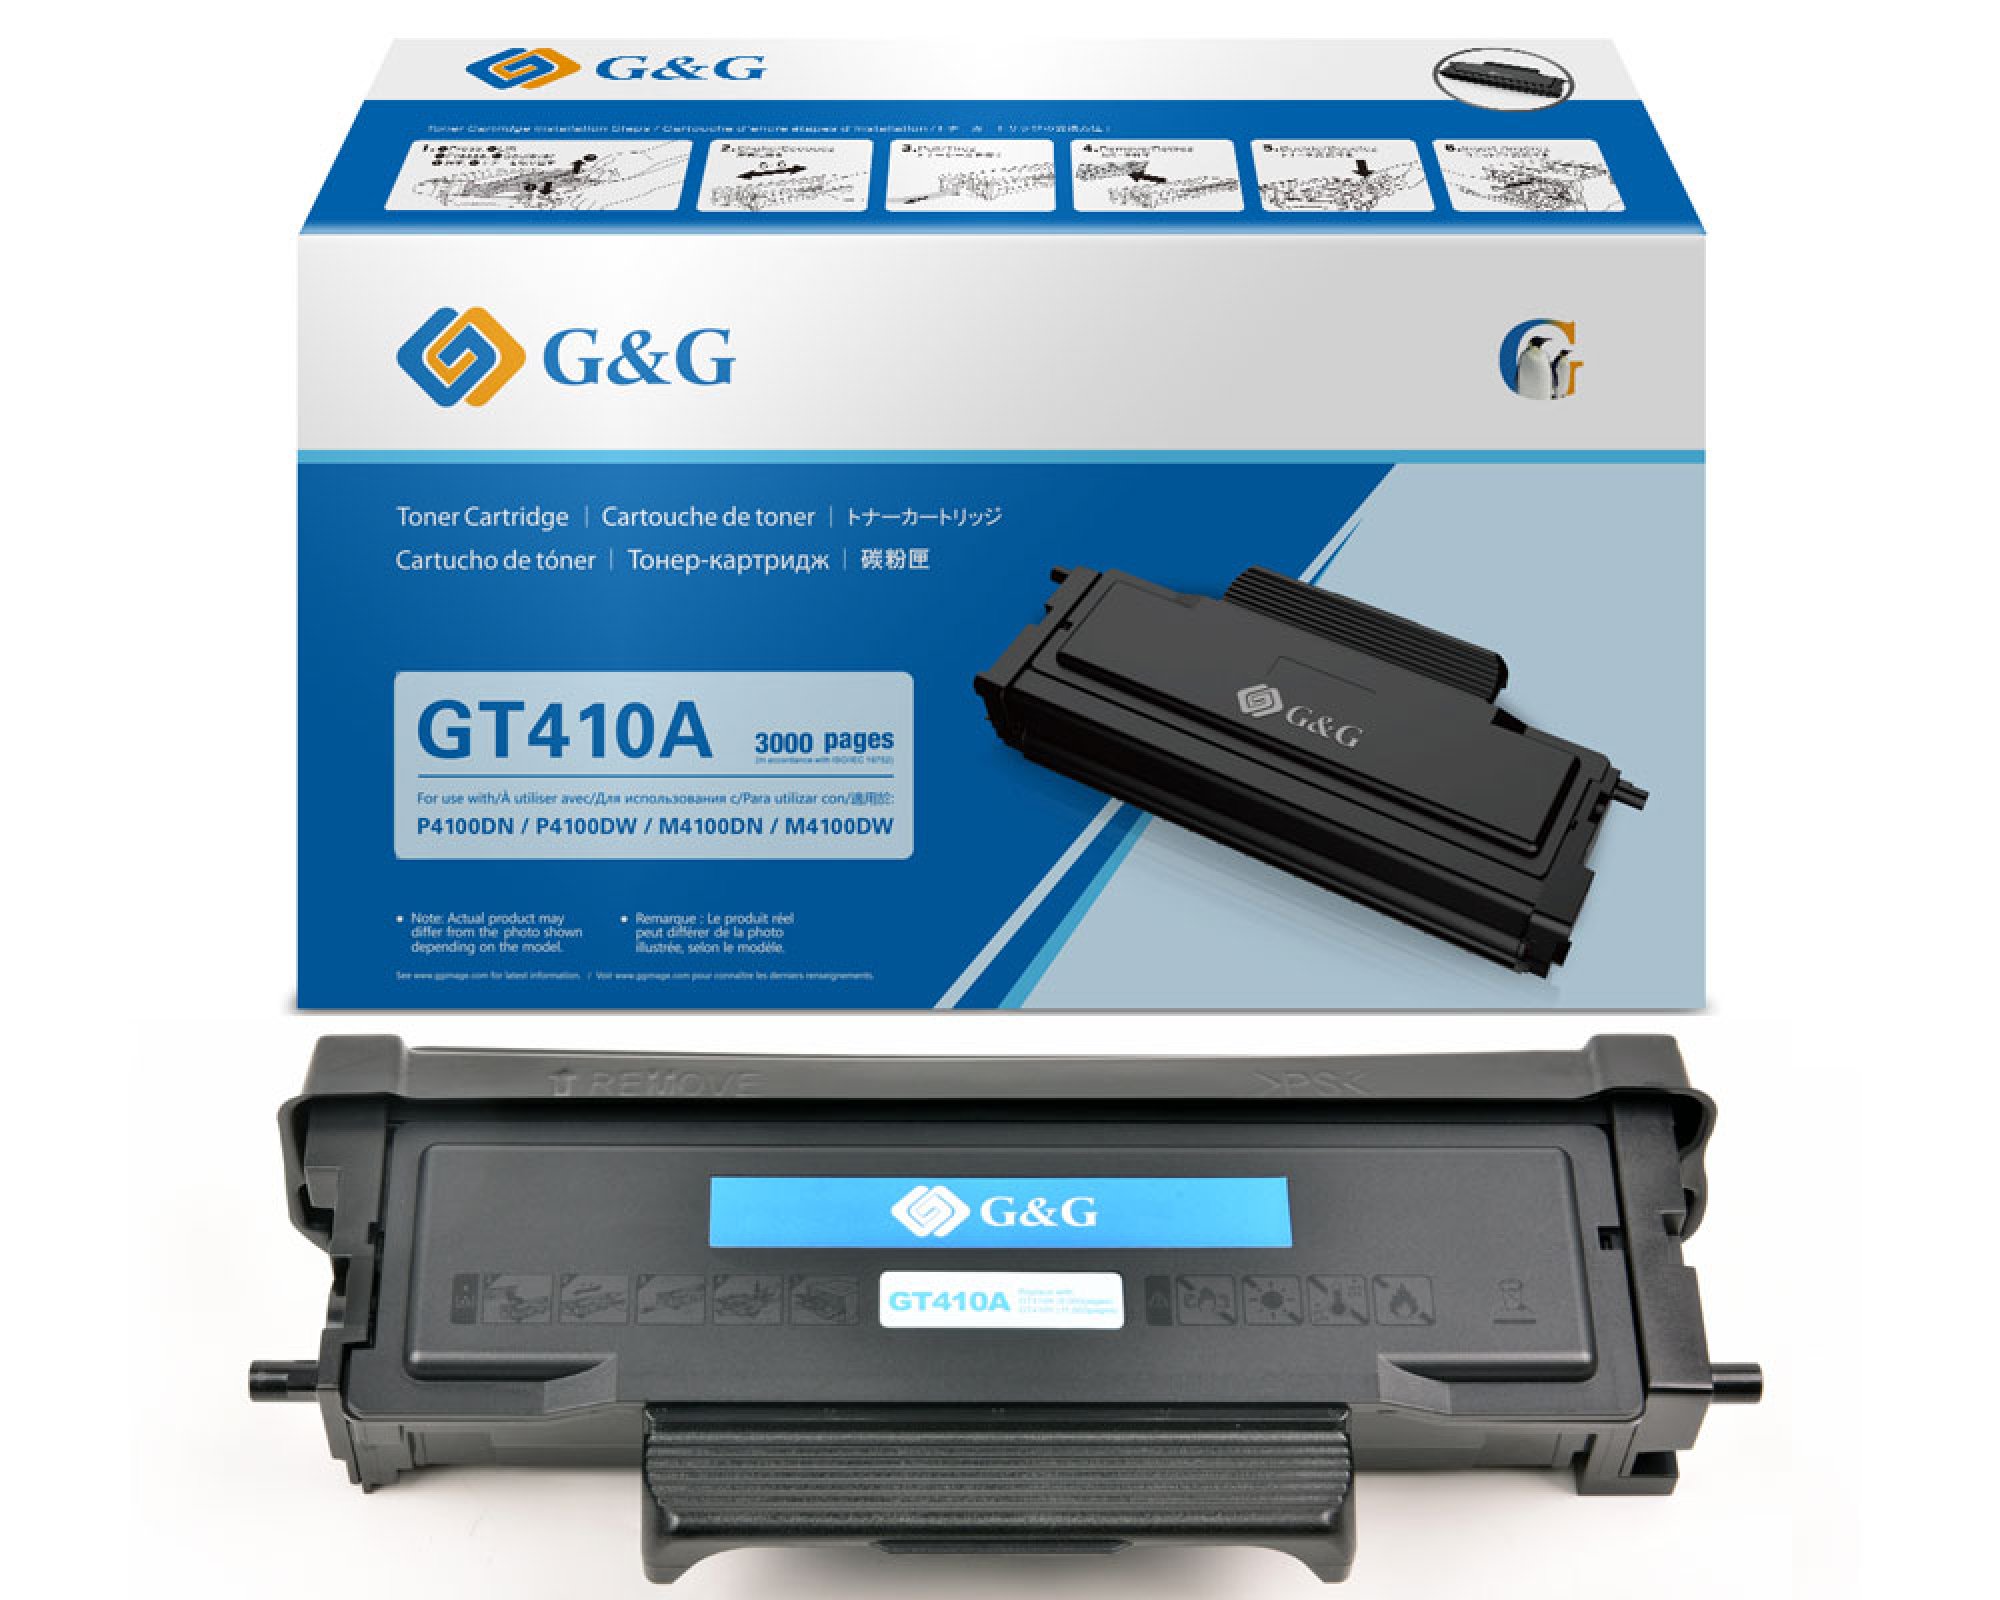 Original G&G Toner GT410A für G&G Drucker M4100DW + P4100DW (3.000 Seiten) [modell]